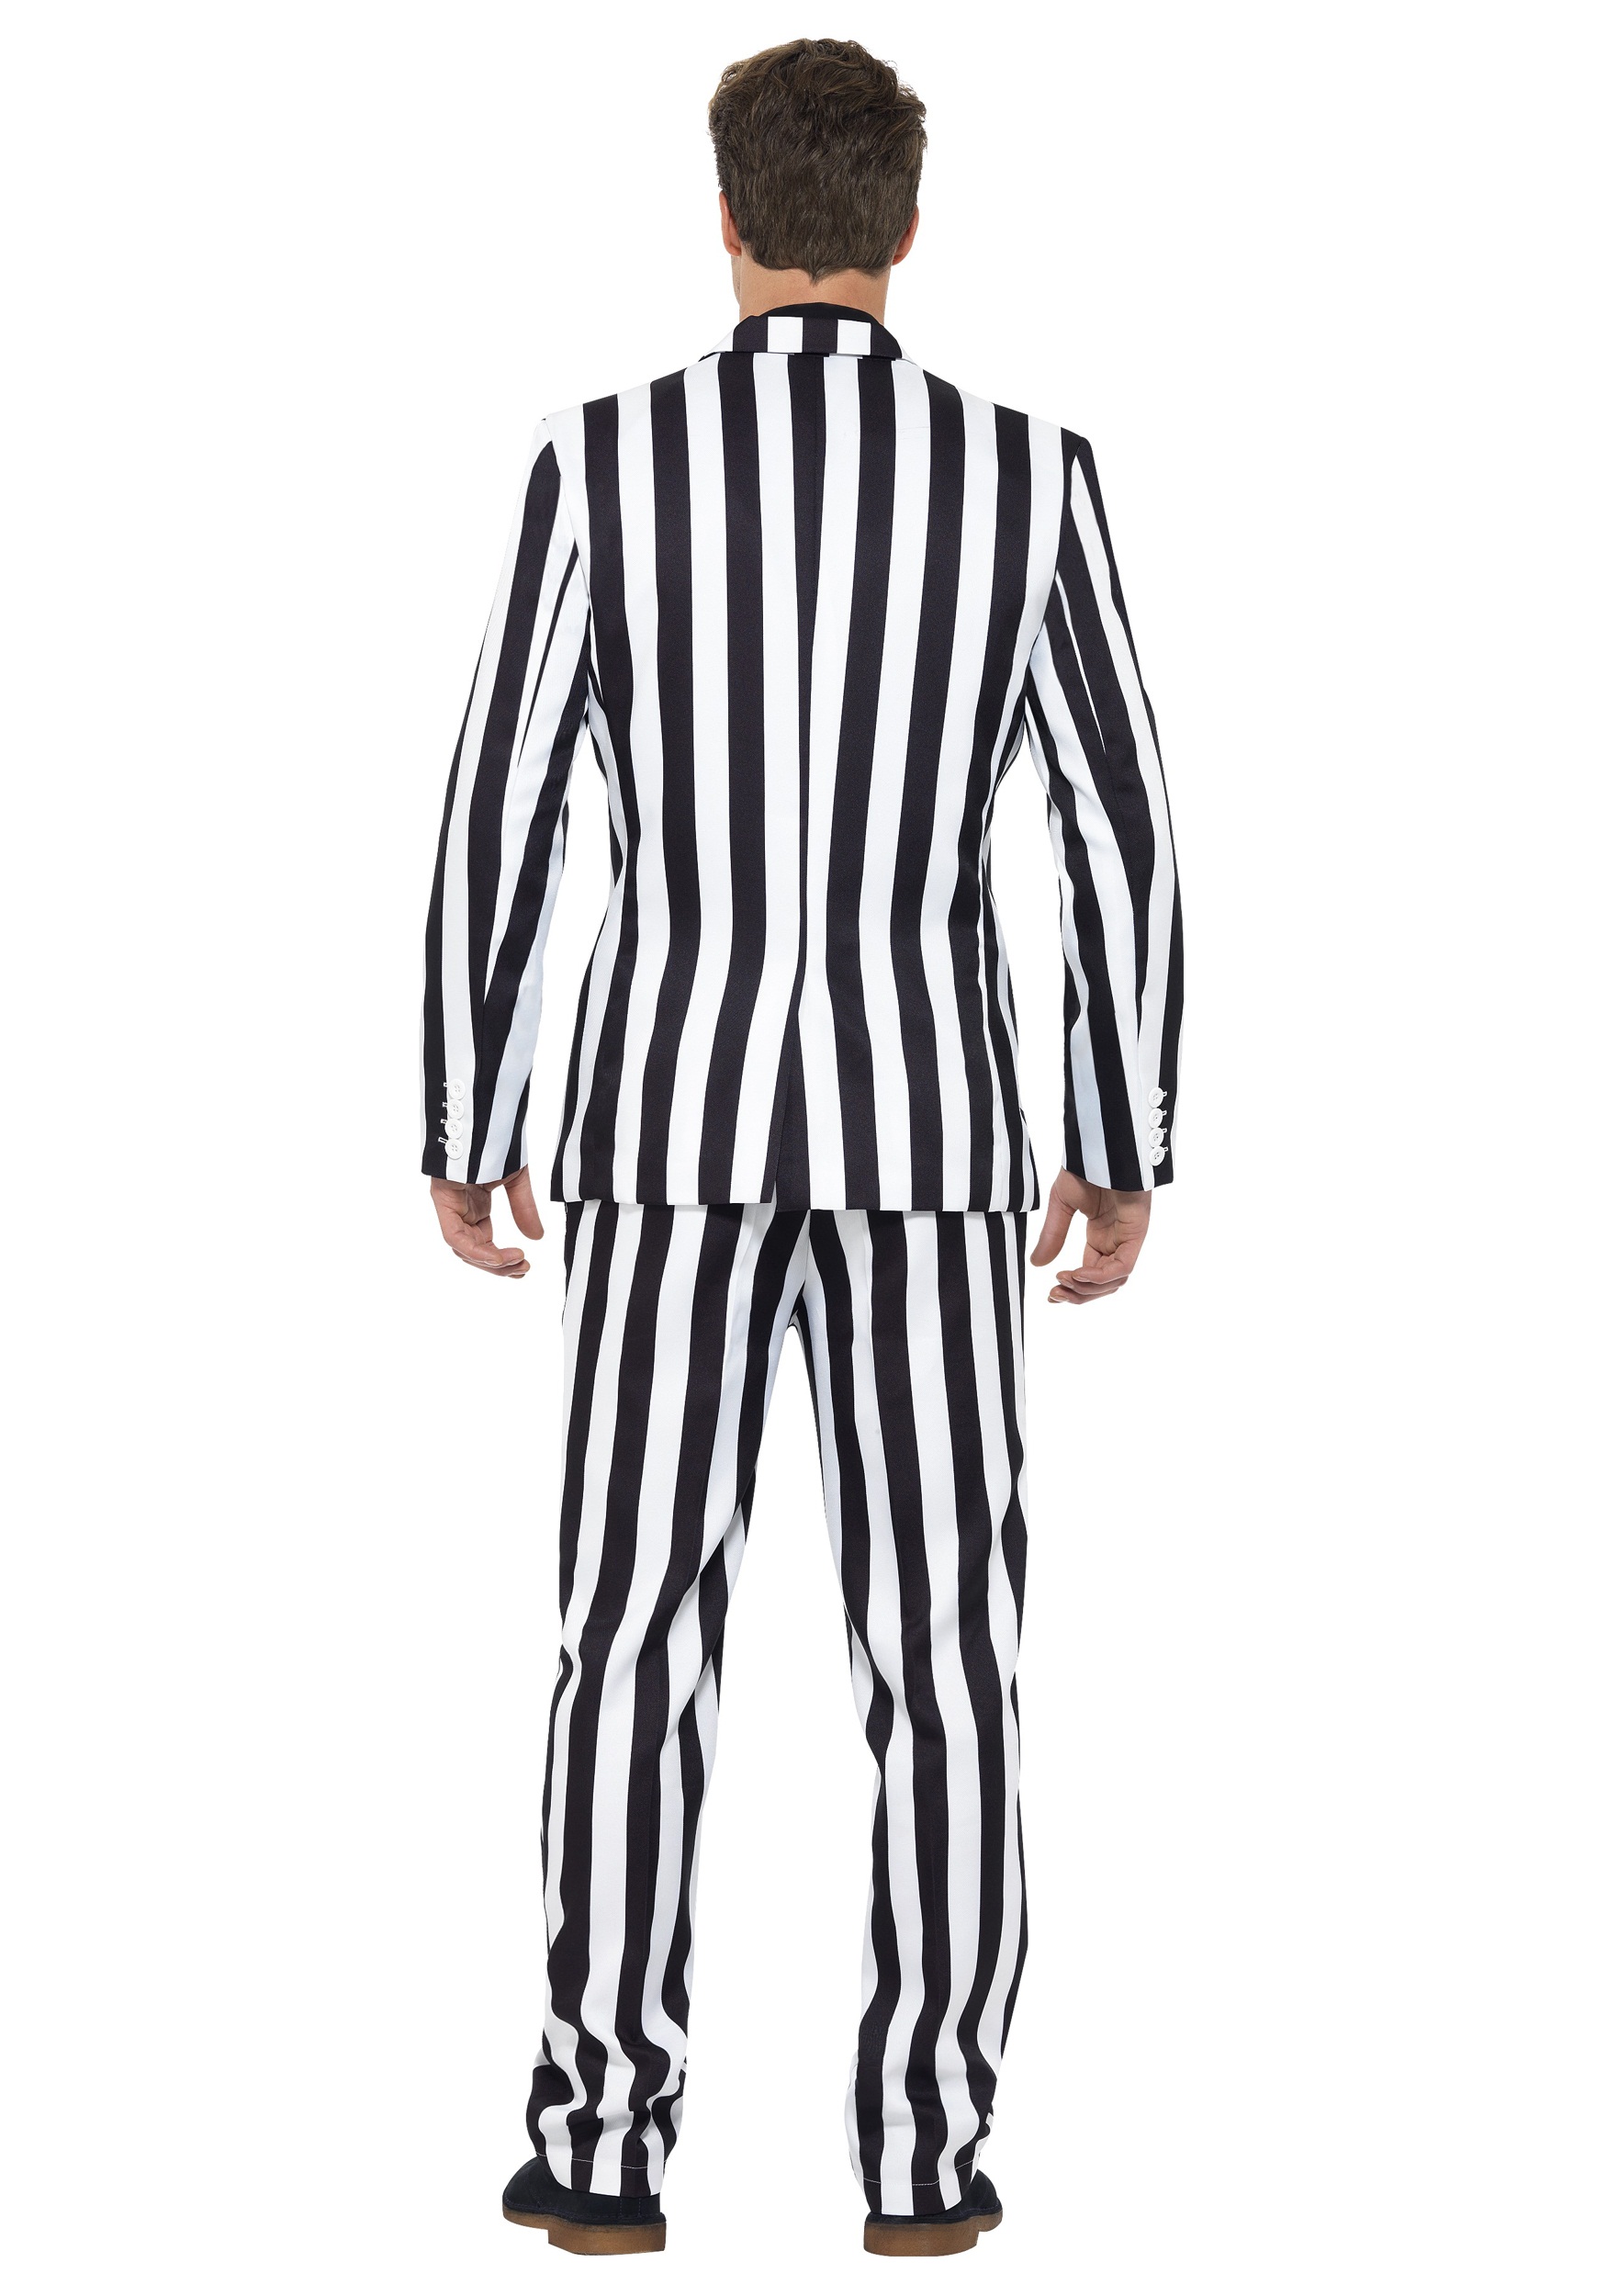 Humbug Striped Men's Suit